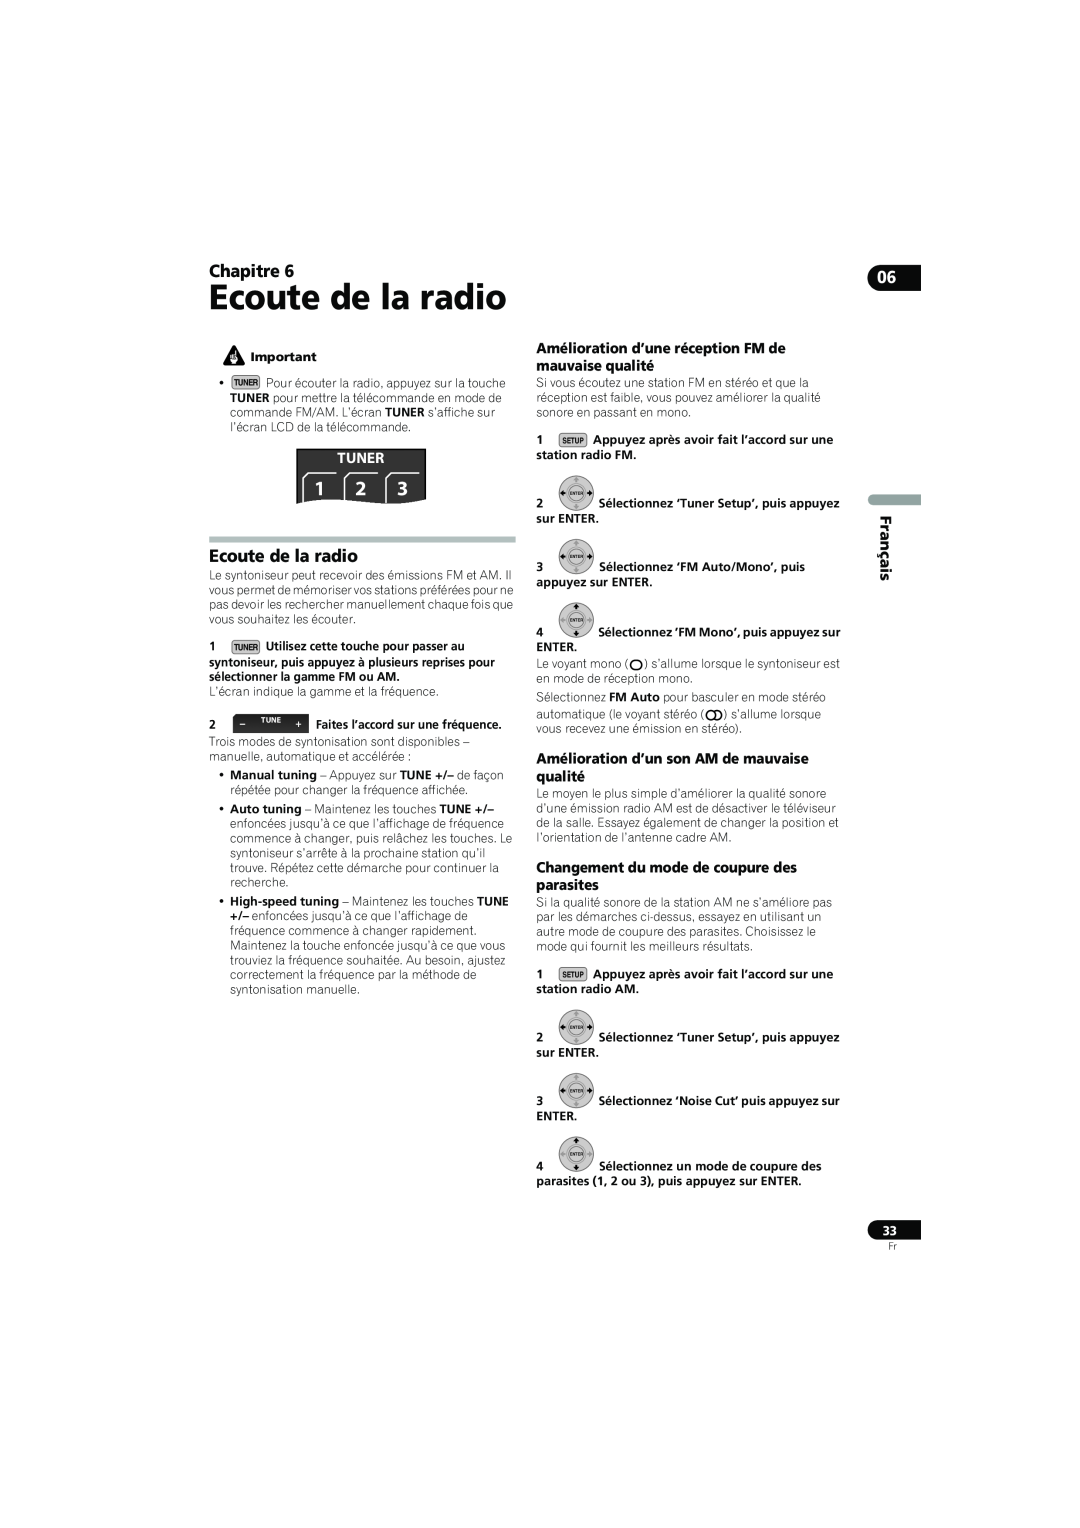 Pioneer SX-LX70SW Ecoute de la radio, Amélioration d’une réception FM de mauvaise qualité, Chapitre, Tuner, Français 